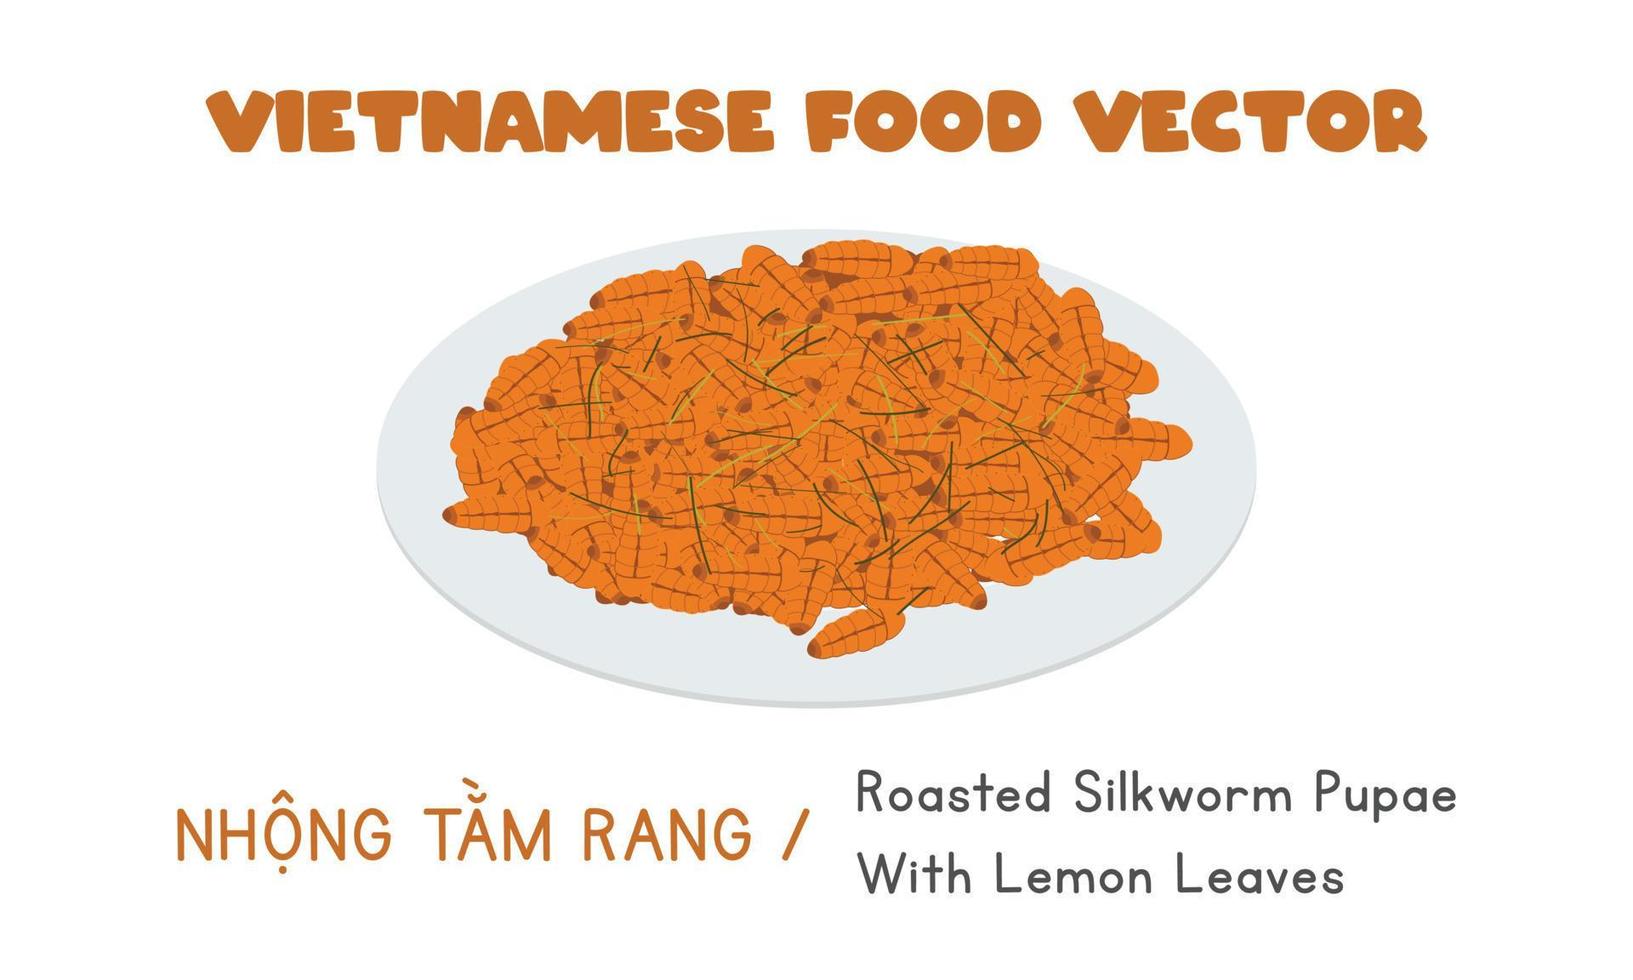 pupas de gusano de seda asadas vietnamitas con diseño de vector plano de hojas de limón. nhong tam rang clipart estilo de dibujos animados. comida asiática. cocina vietnamita comida exótica